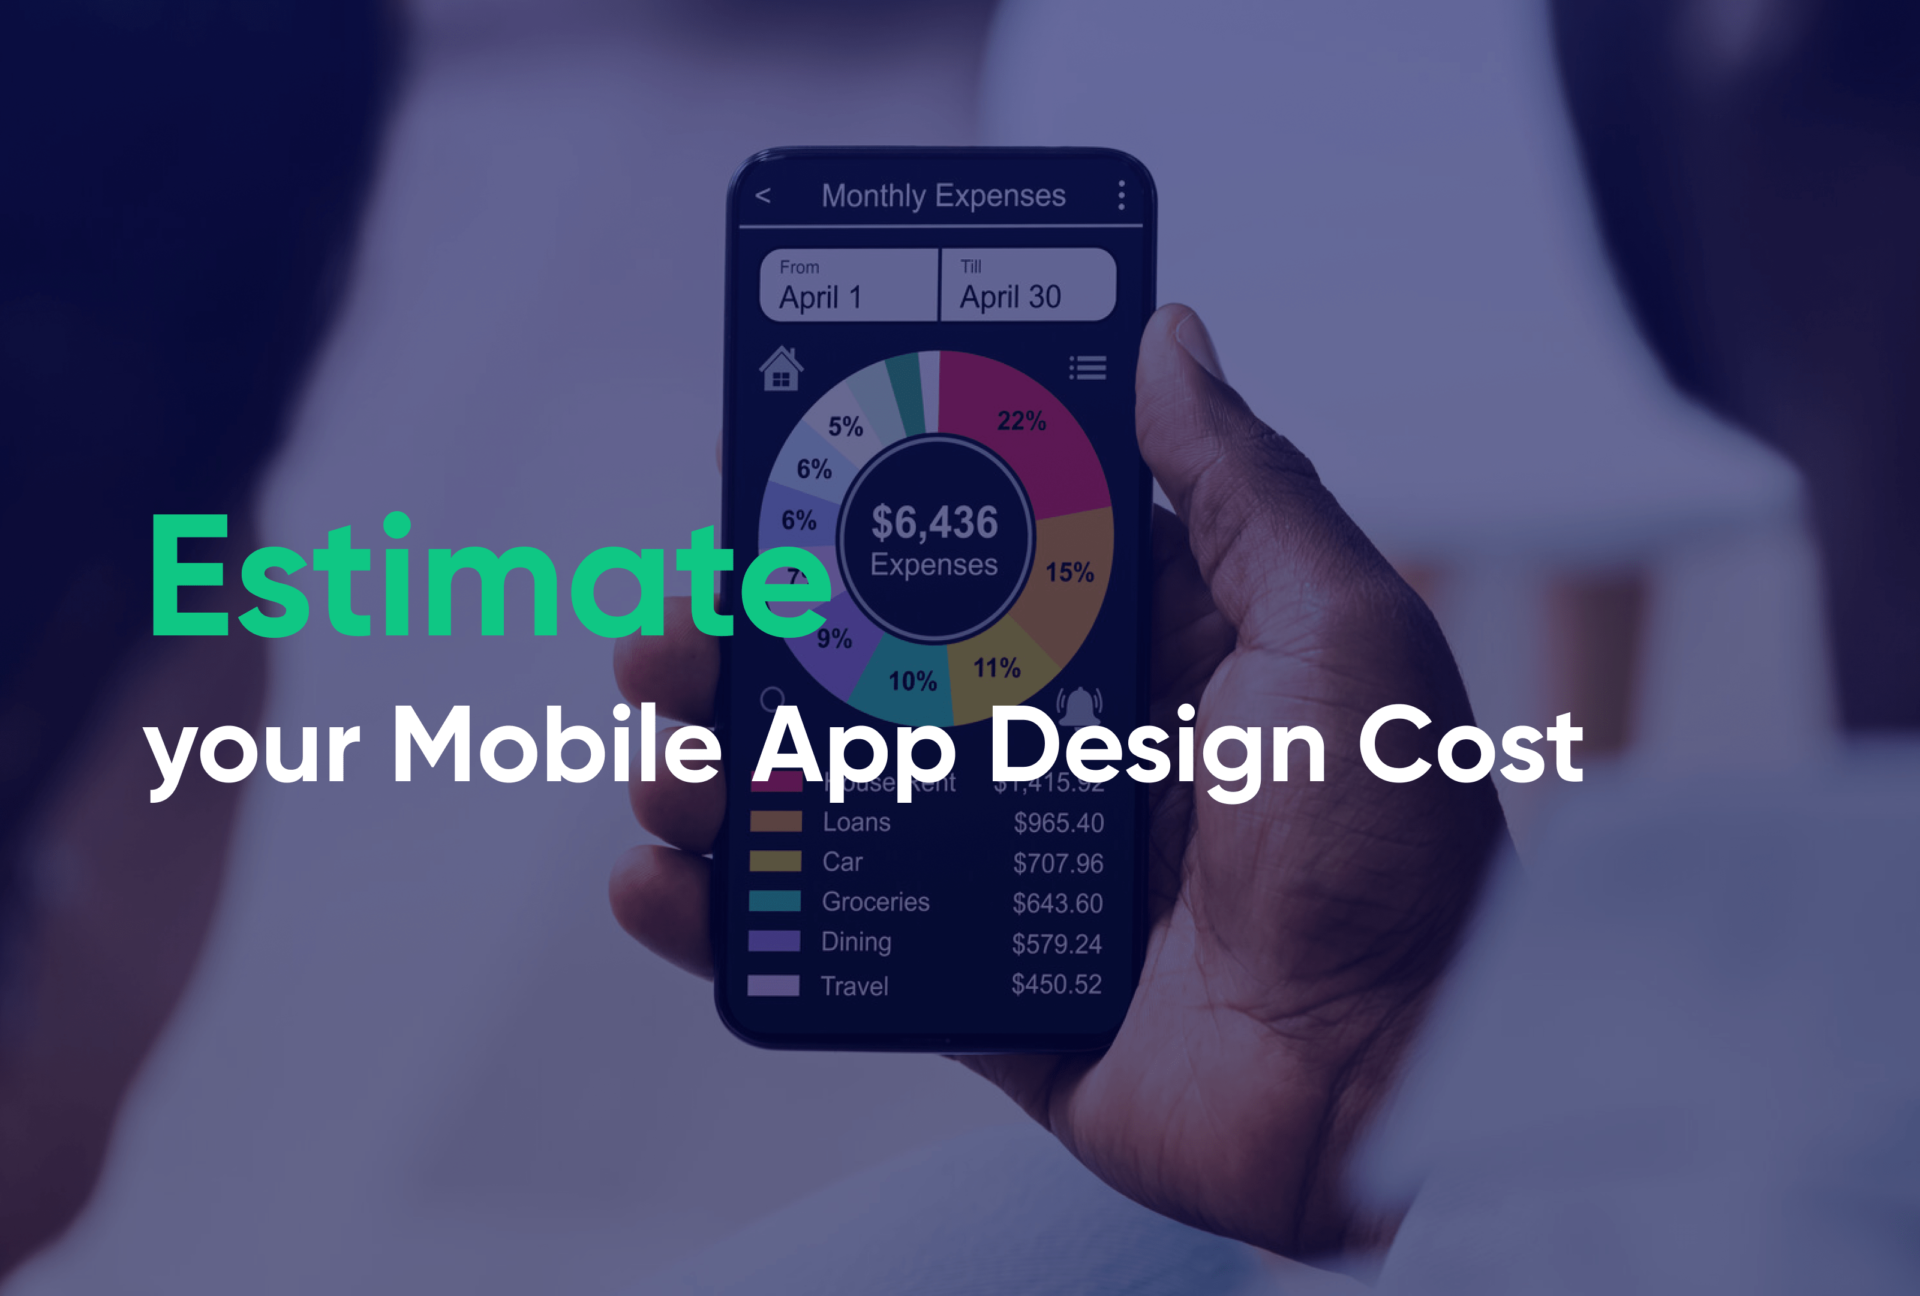 Estimate your Mobile App Design Cost